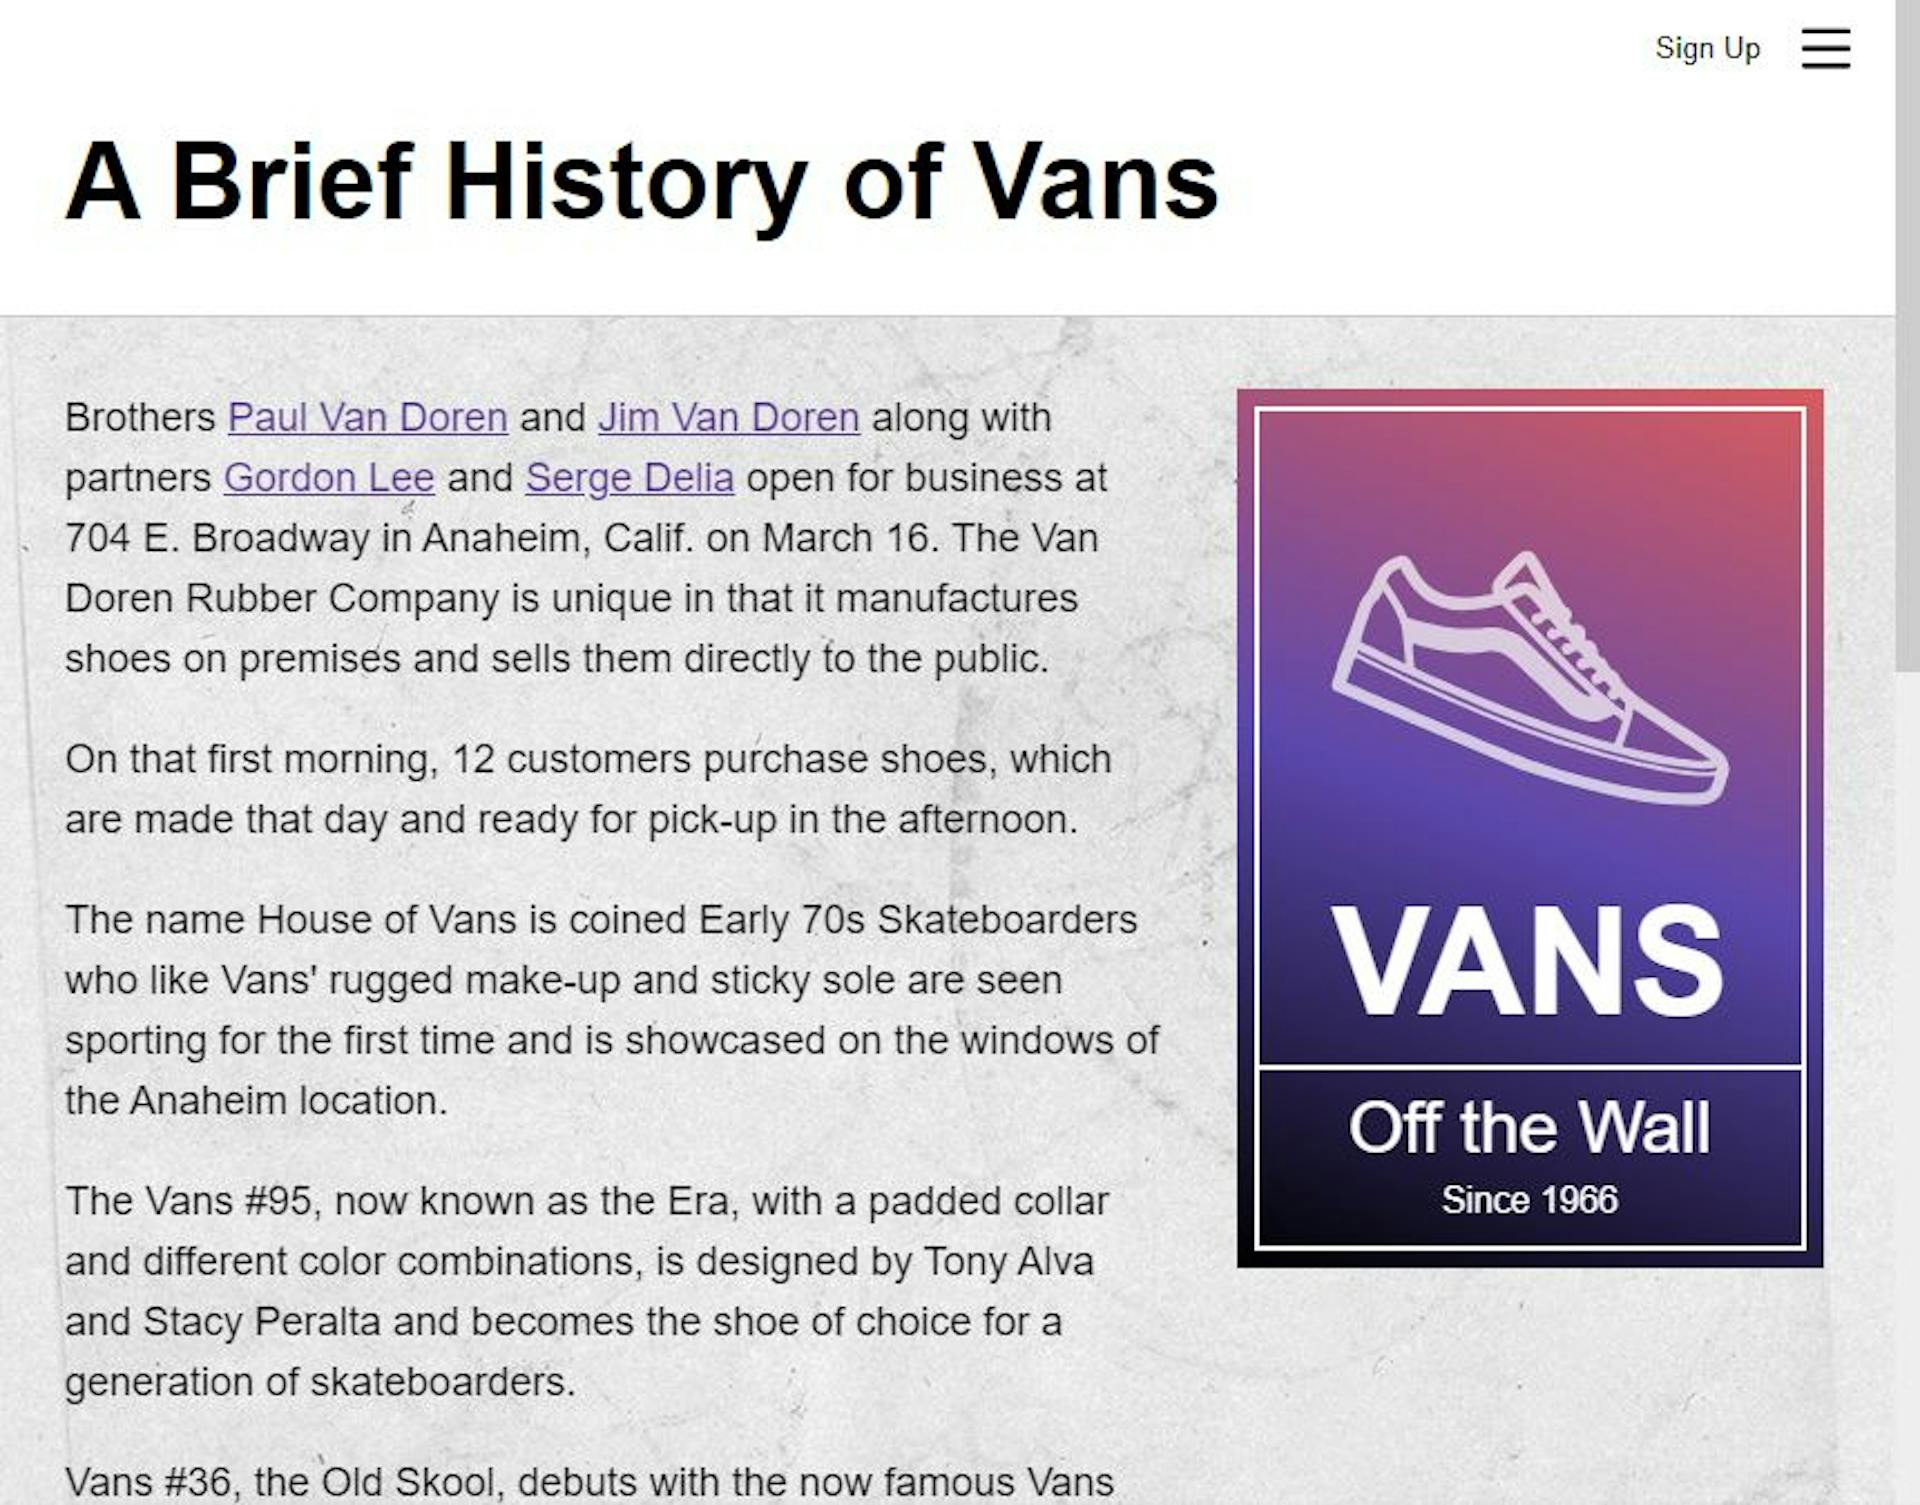 Trang web giới thiệu Vans